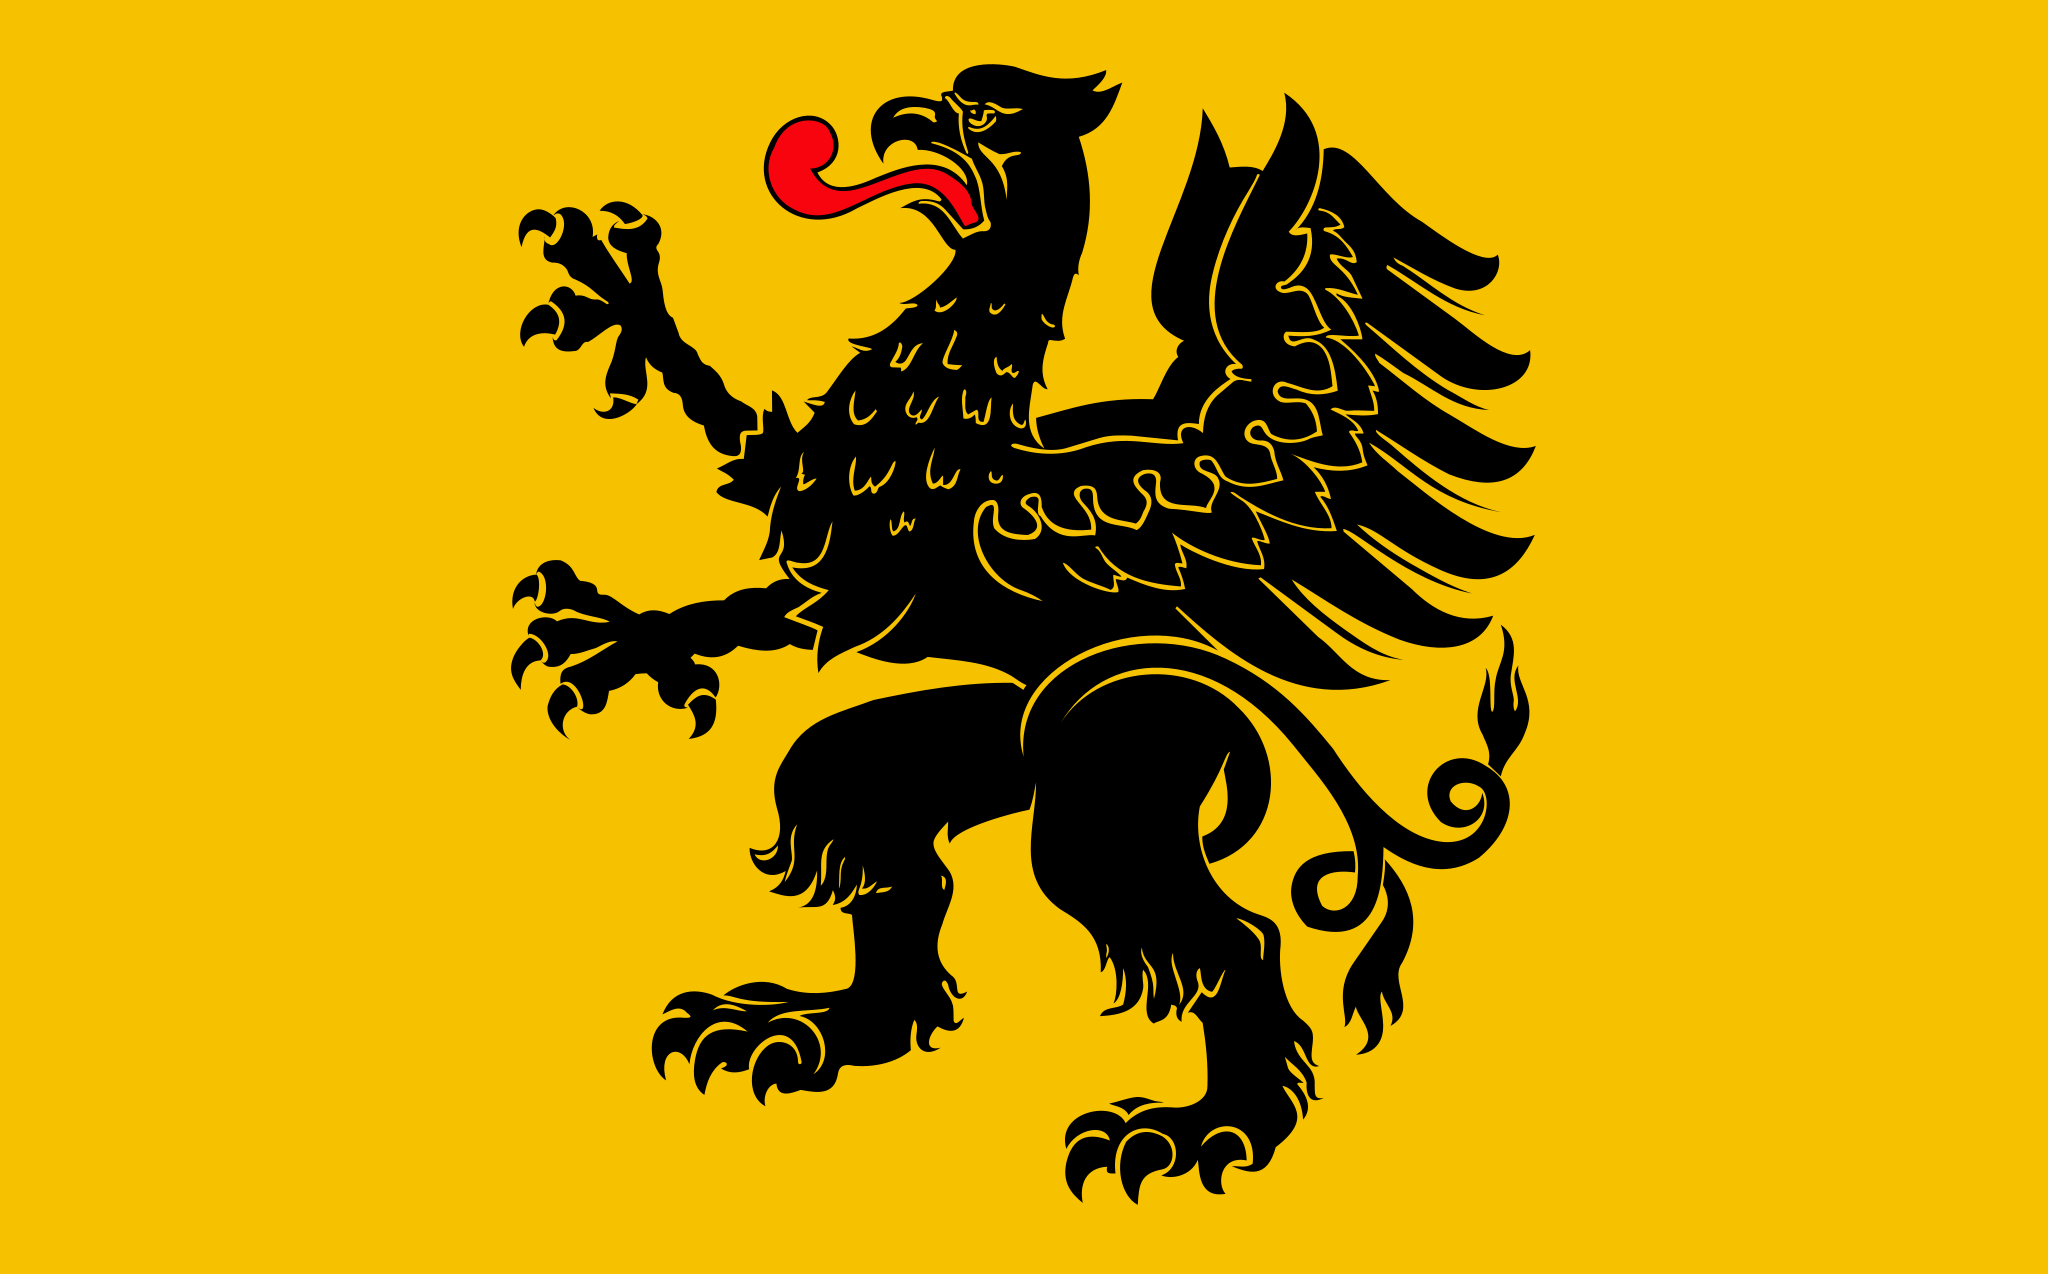 Vlajka pomořského vojvodství | vlajka, prapor, symbol, vlaječka, obrázek | Polská vojvodství |  2048x1274 px